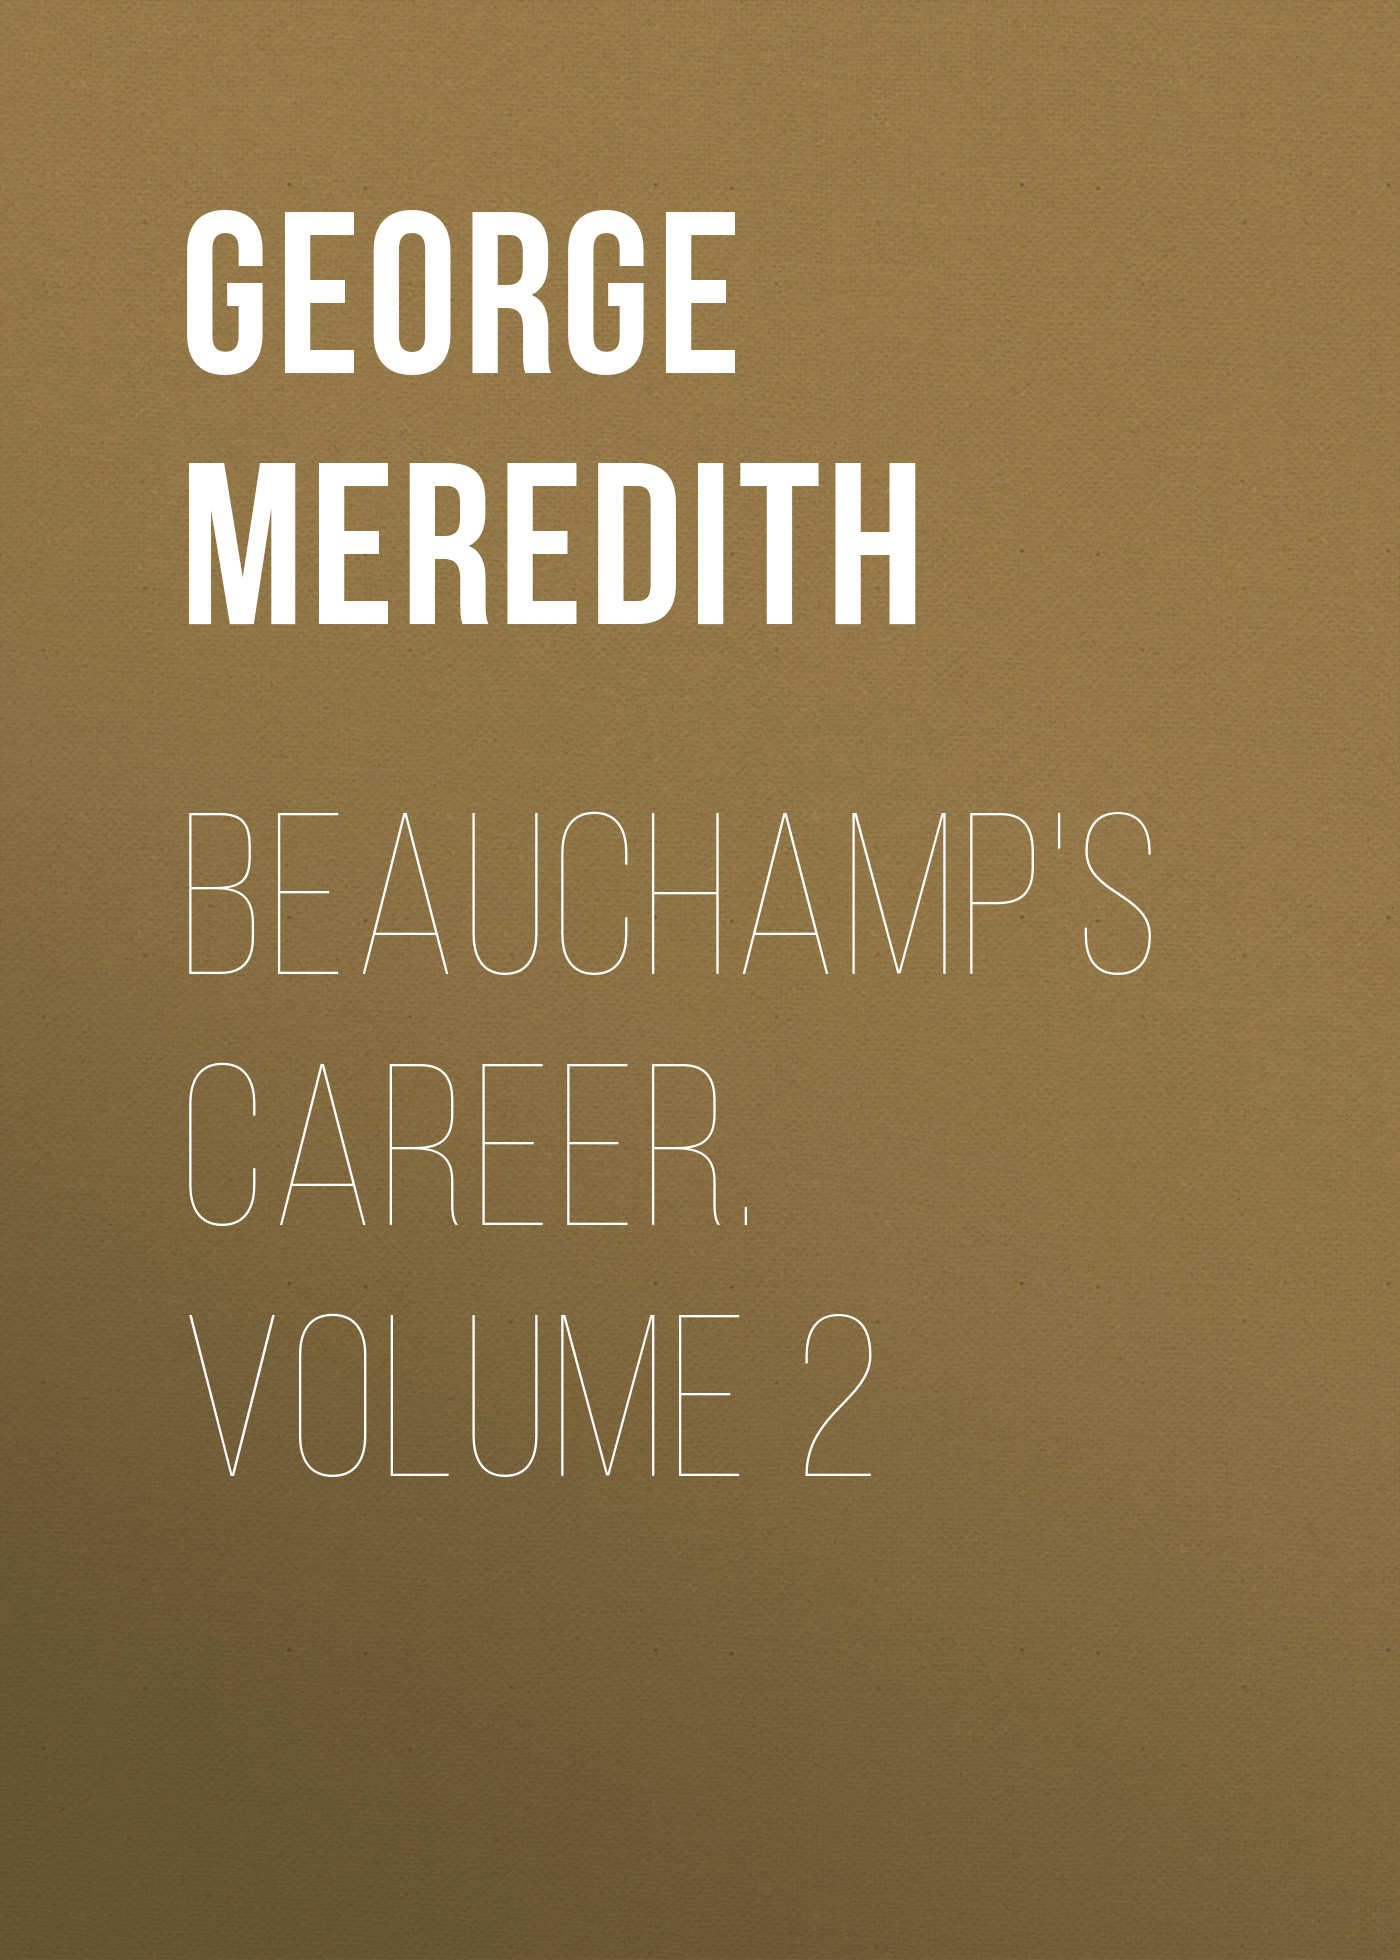 Книга Beauchamp's Career. Volume 2 из серии , созданная George Meredith, может относится к жанру Зарубежная классика, Литература 19 века, Зарубежная старинная литература. Стоимость электронной книги Beauchamp's Career. Volume 2 с идентификатором 36096293 составляет 0 руб.